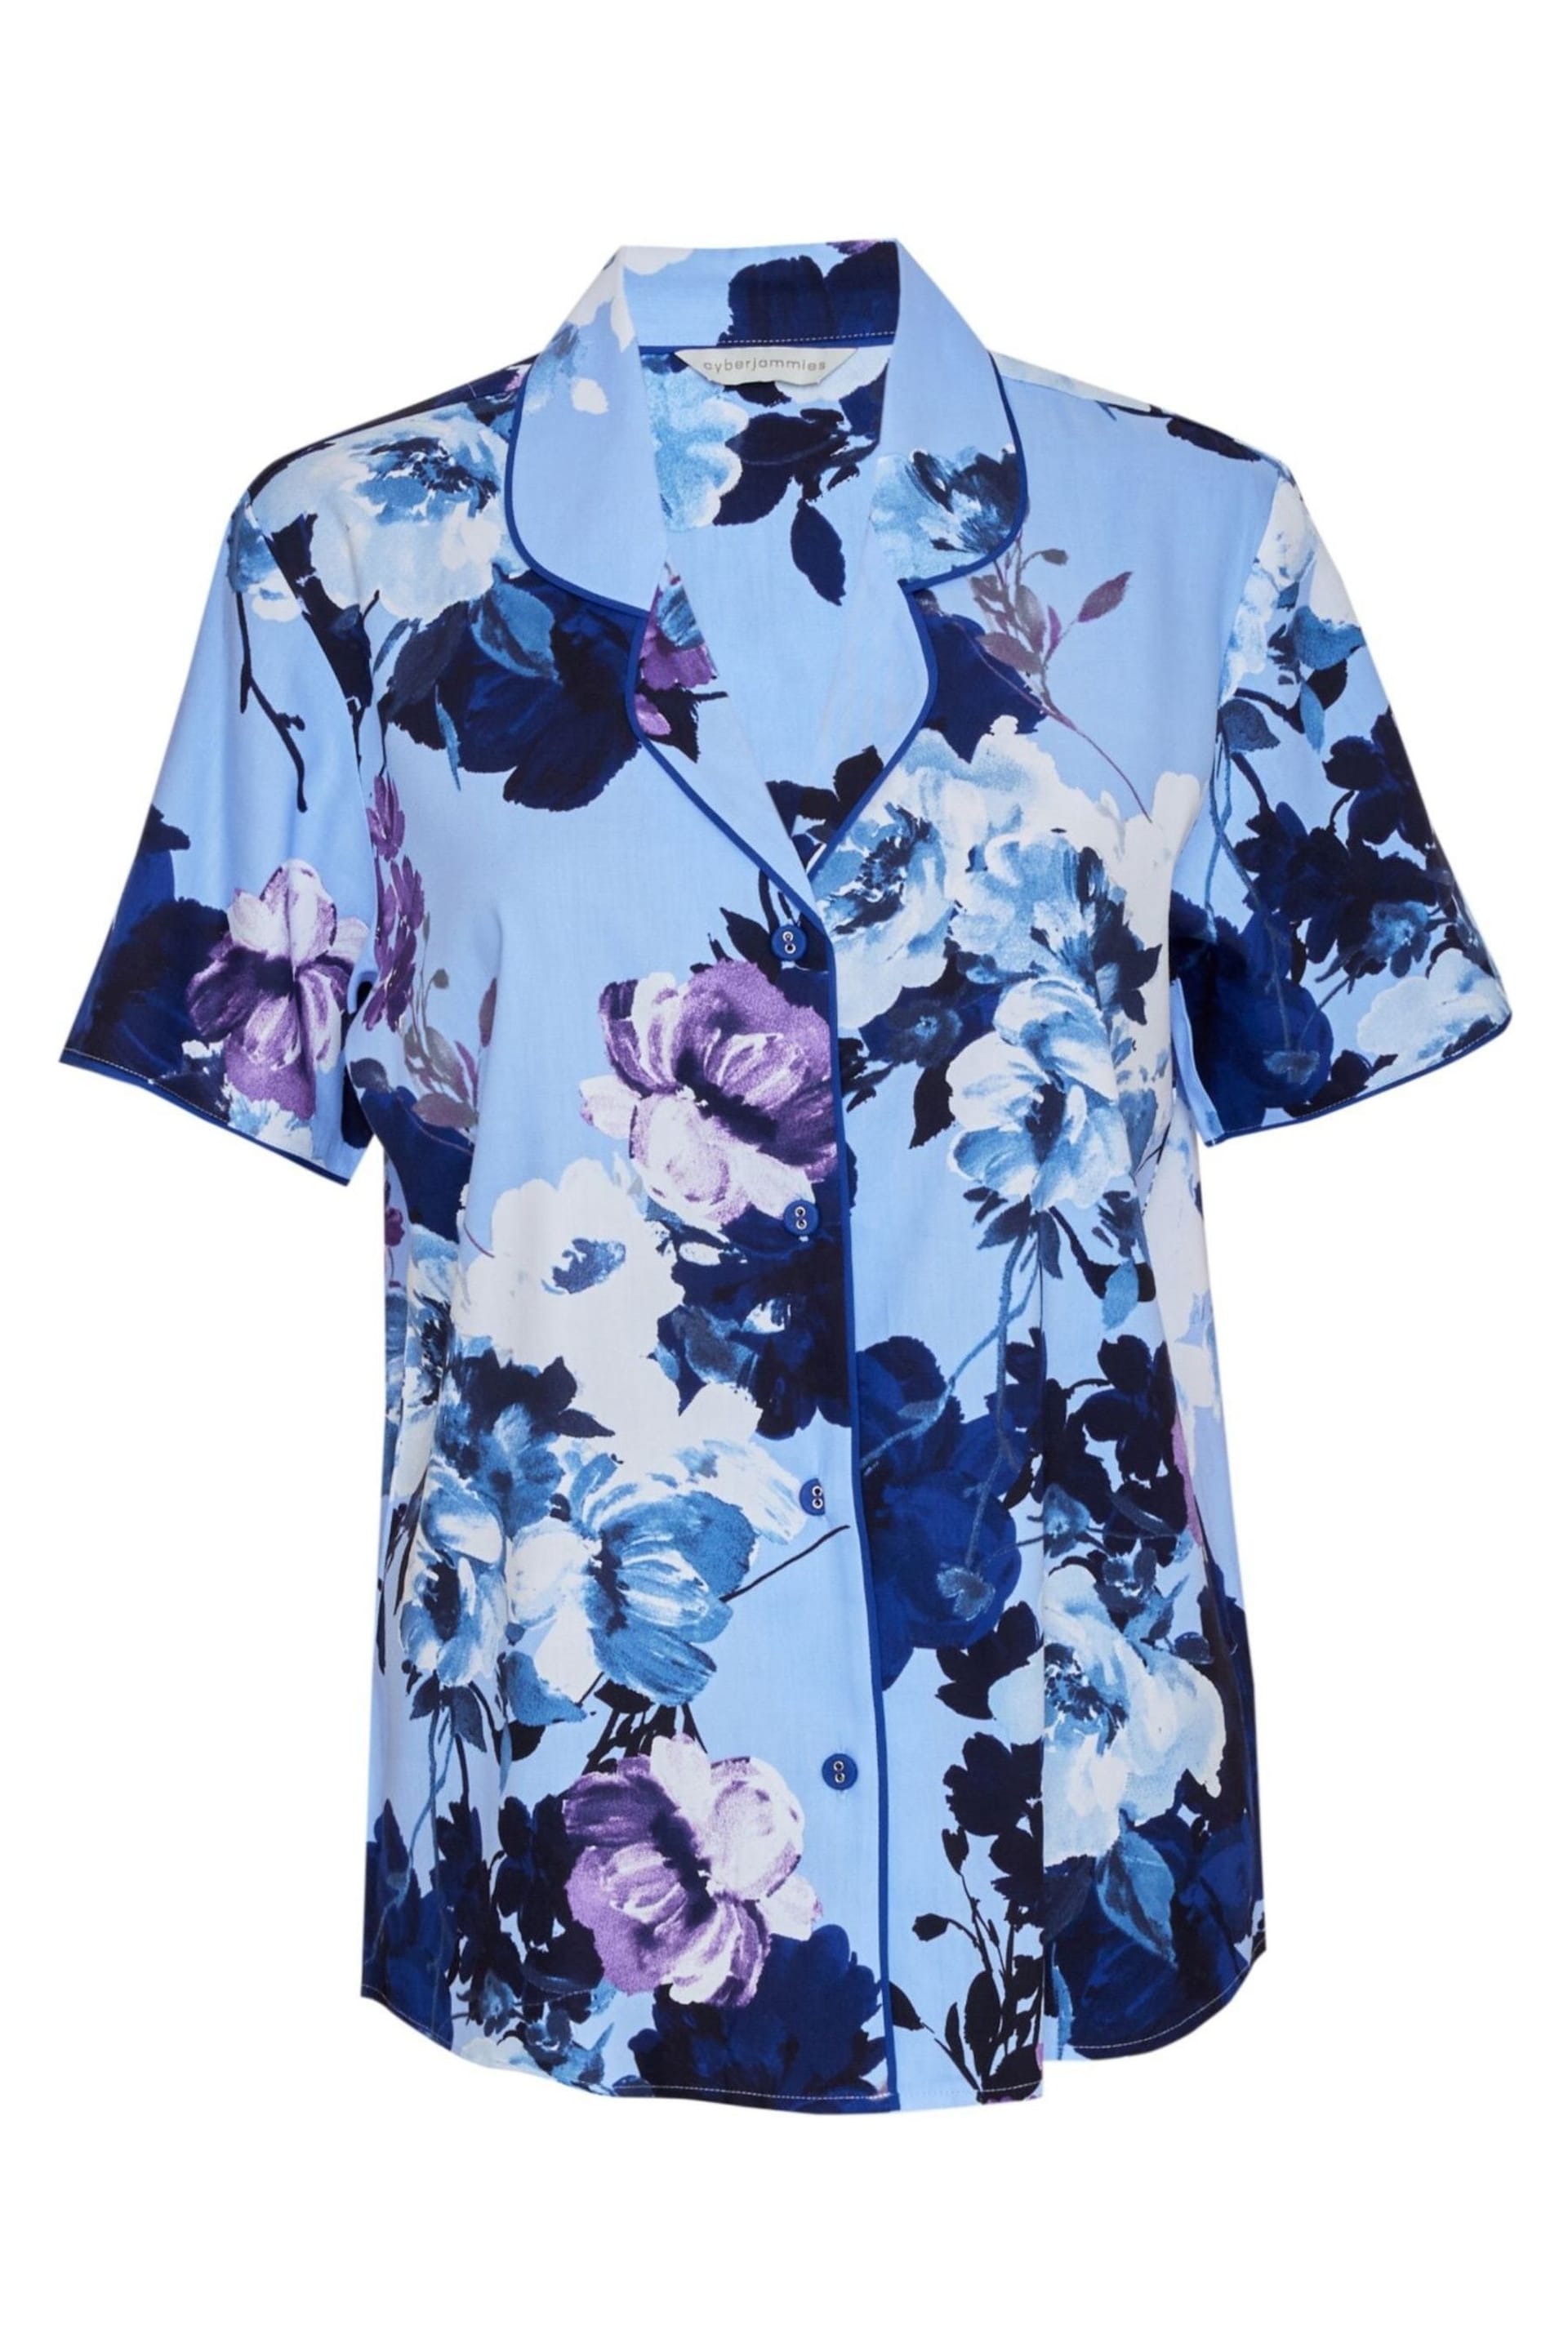 Cyberjammies Blue Floral Print Pyjama Top - Image 4 of 4